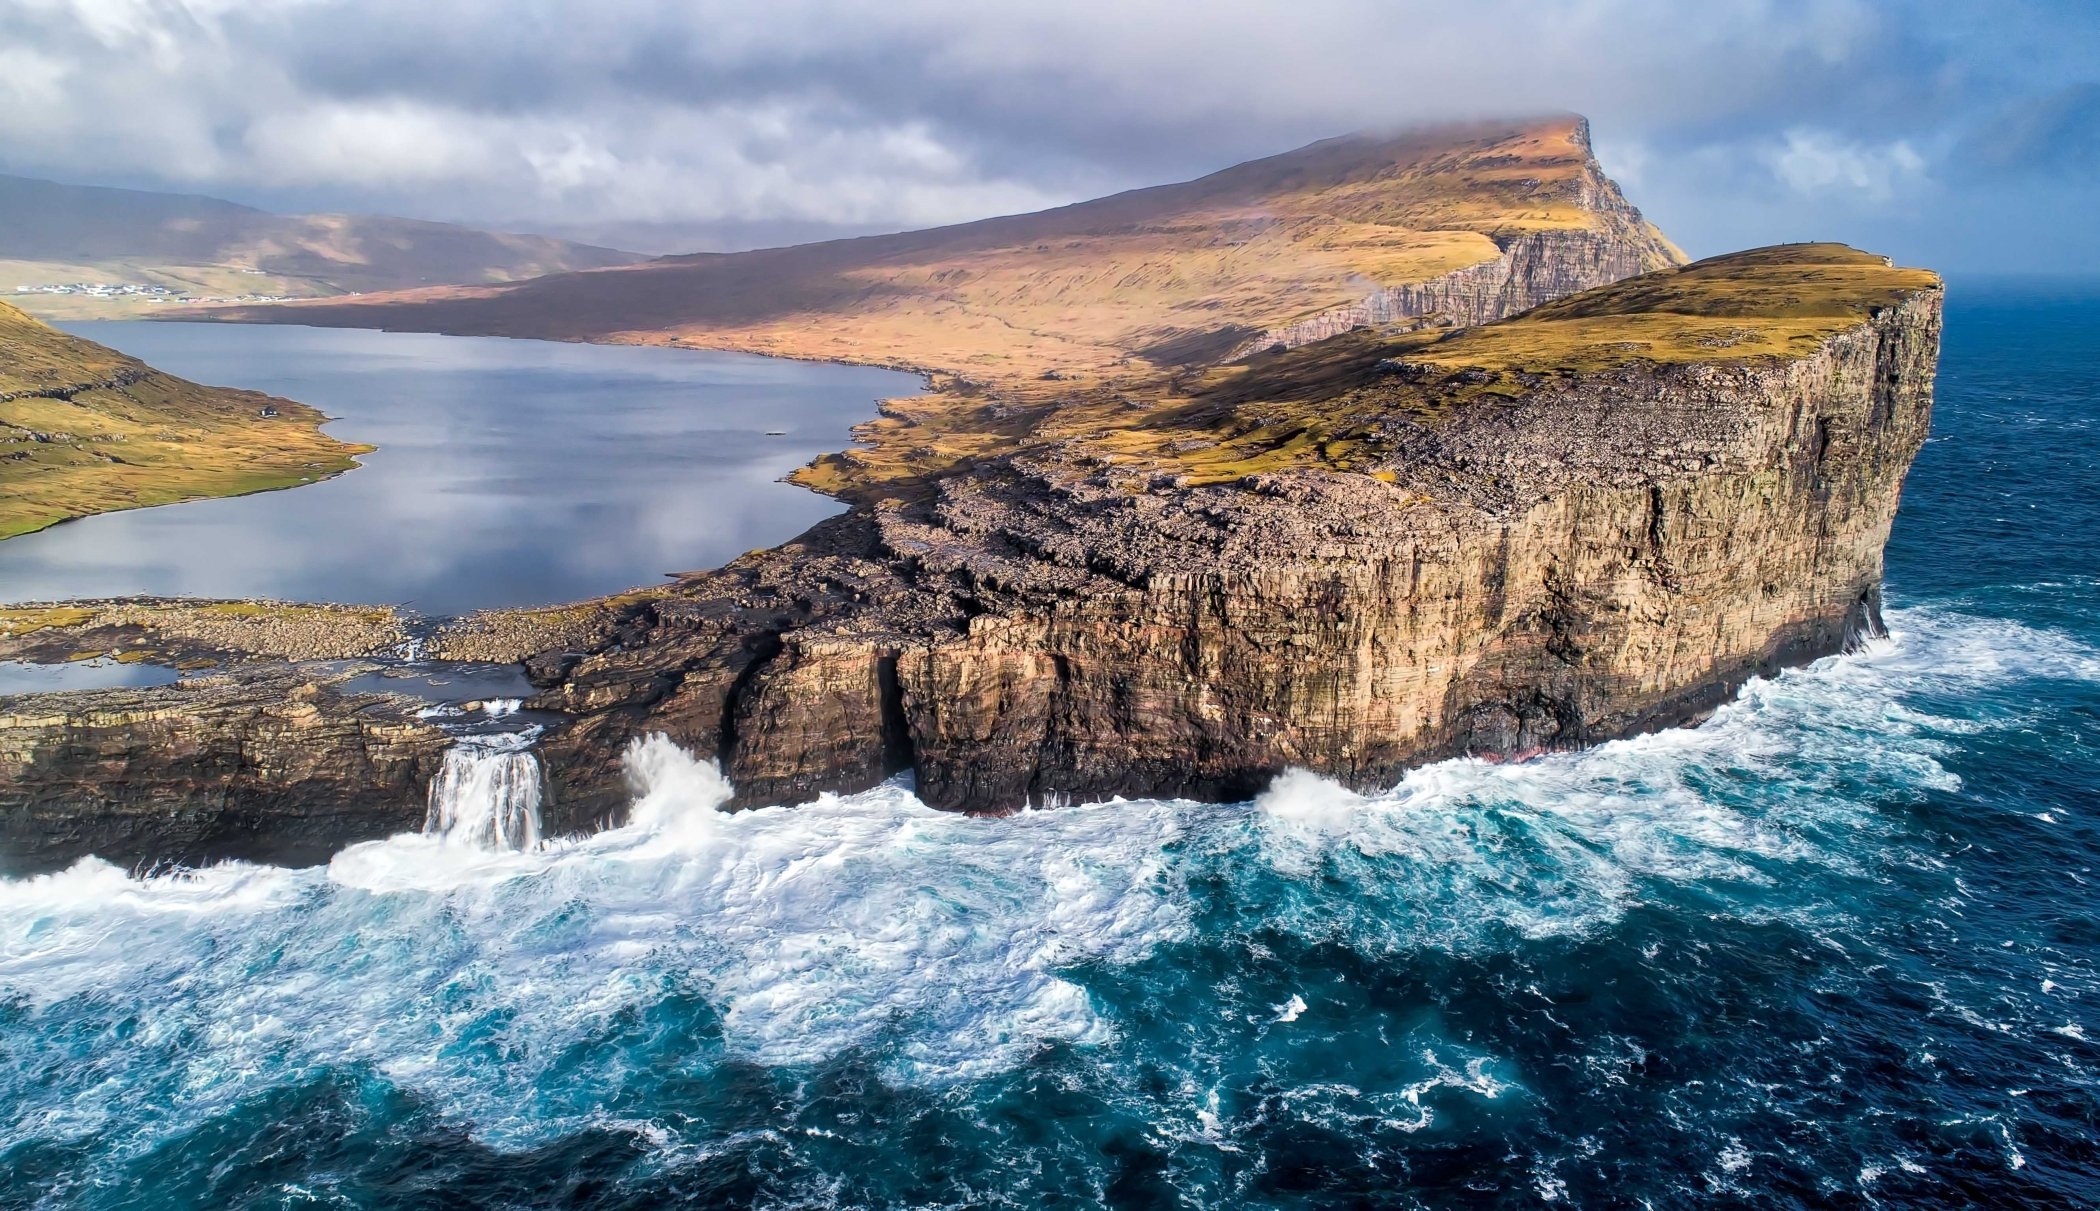 People live on islands. Фарерские острова озеро Сорвагсватн. Сорвагсватн озеро над океаном Фарерские острова. Висячее озеро Сорвагсватн, Фарерские острова.